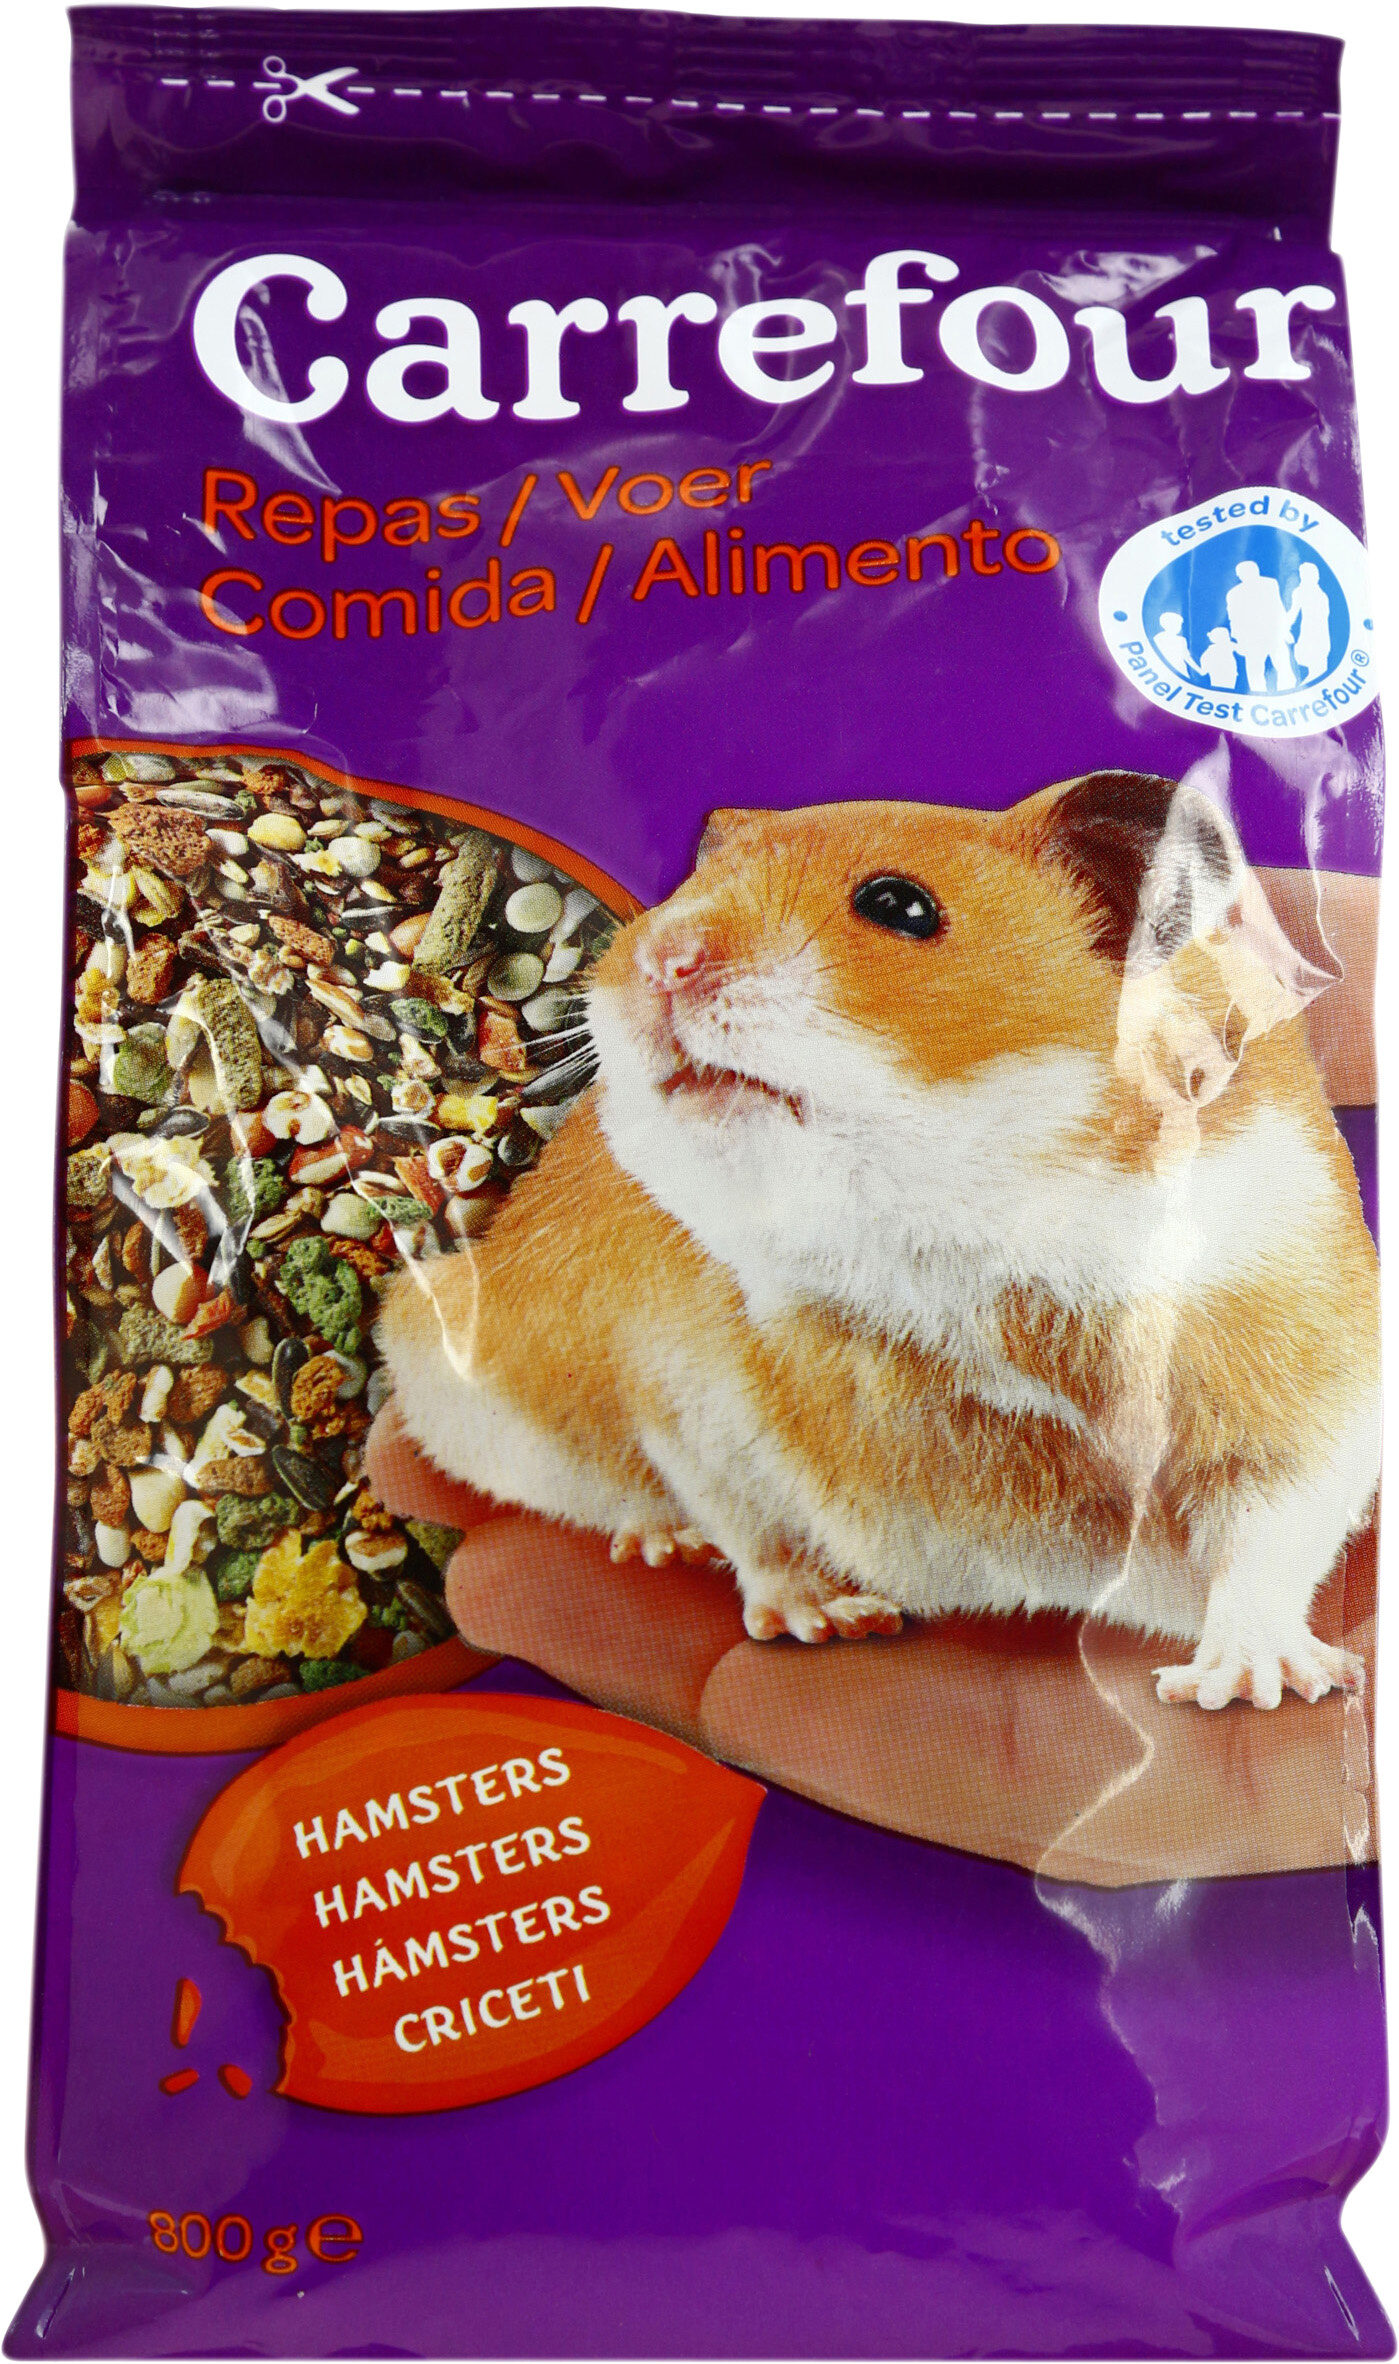 Nourriture hamster - Produit - fr